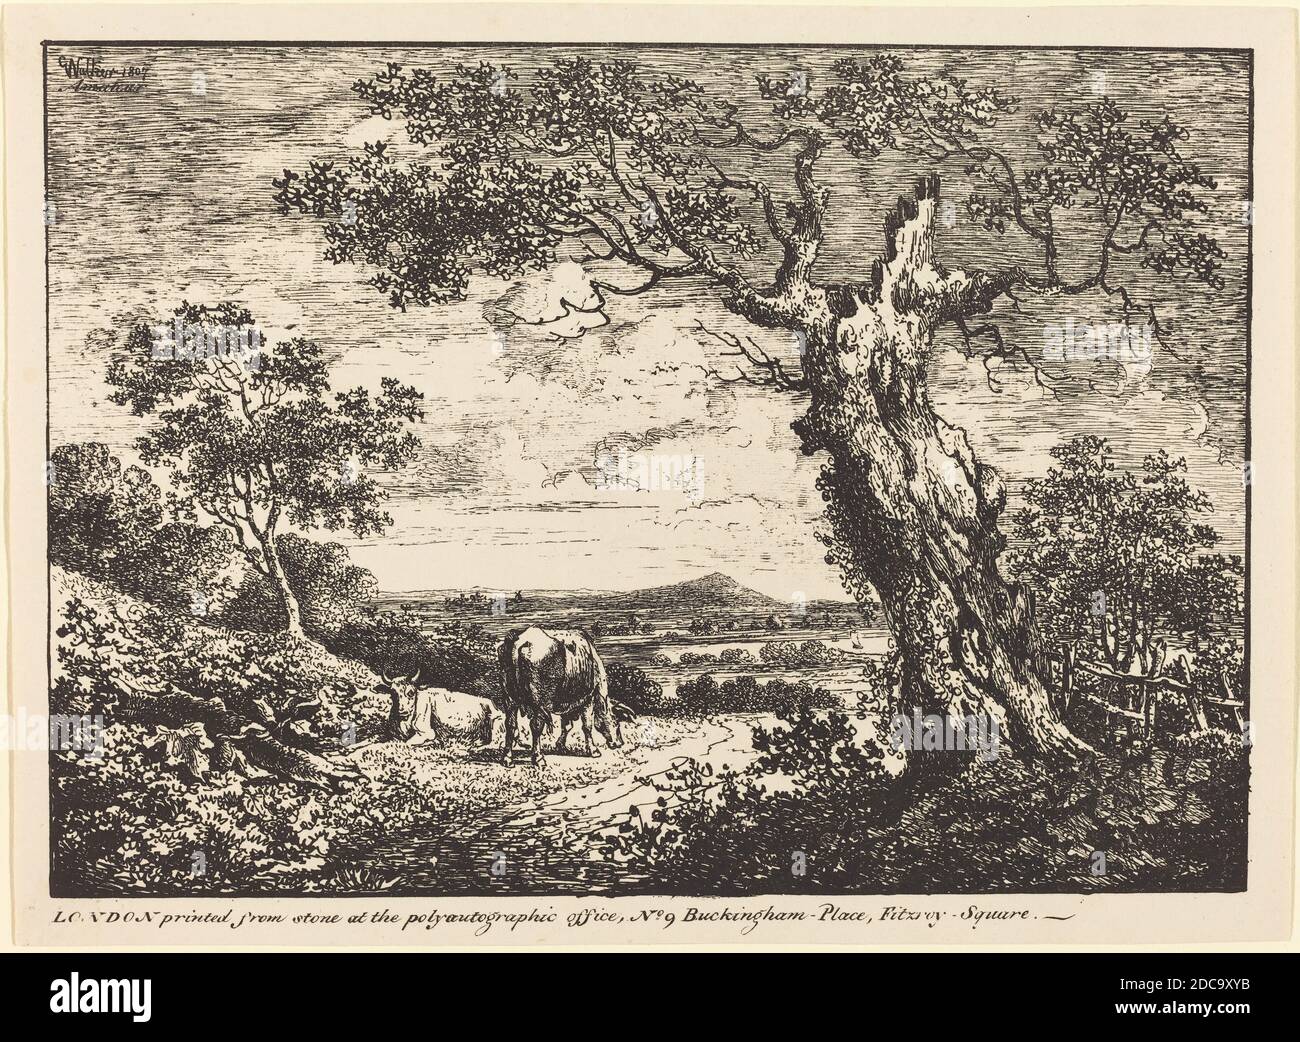 George Walker, (artista), britannico, attivo 1803/1815, Paesaggio con due mucche, esemplari di poliautografia, (serie), 1807, litografia a penna e a tusche Foto Stock